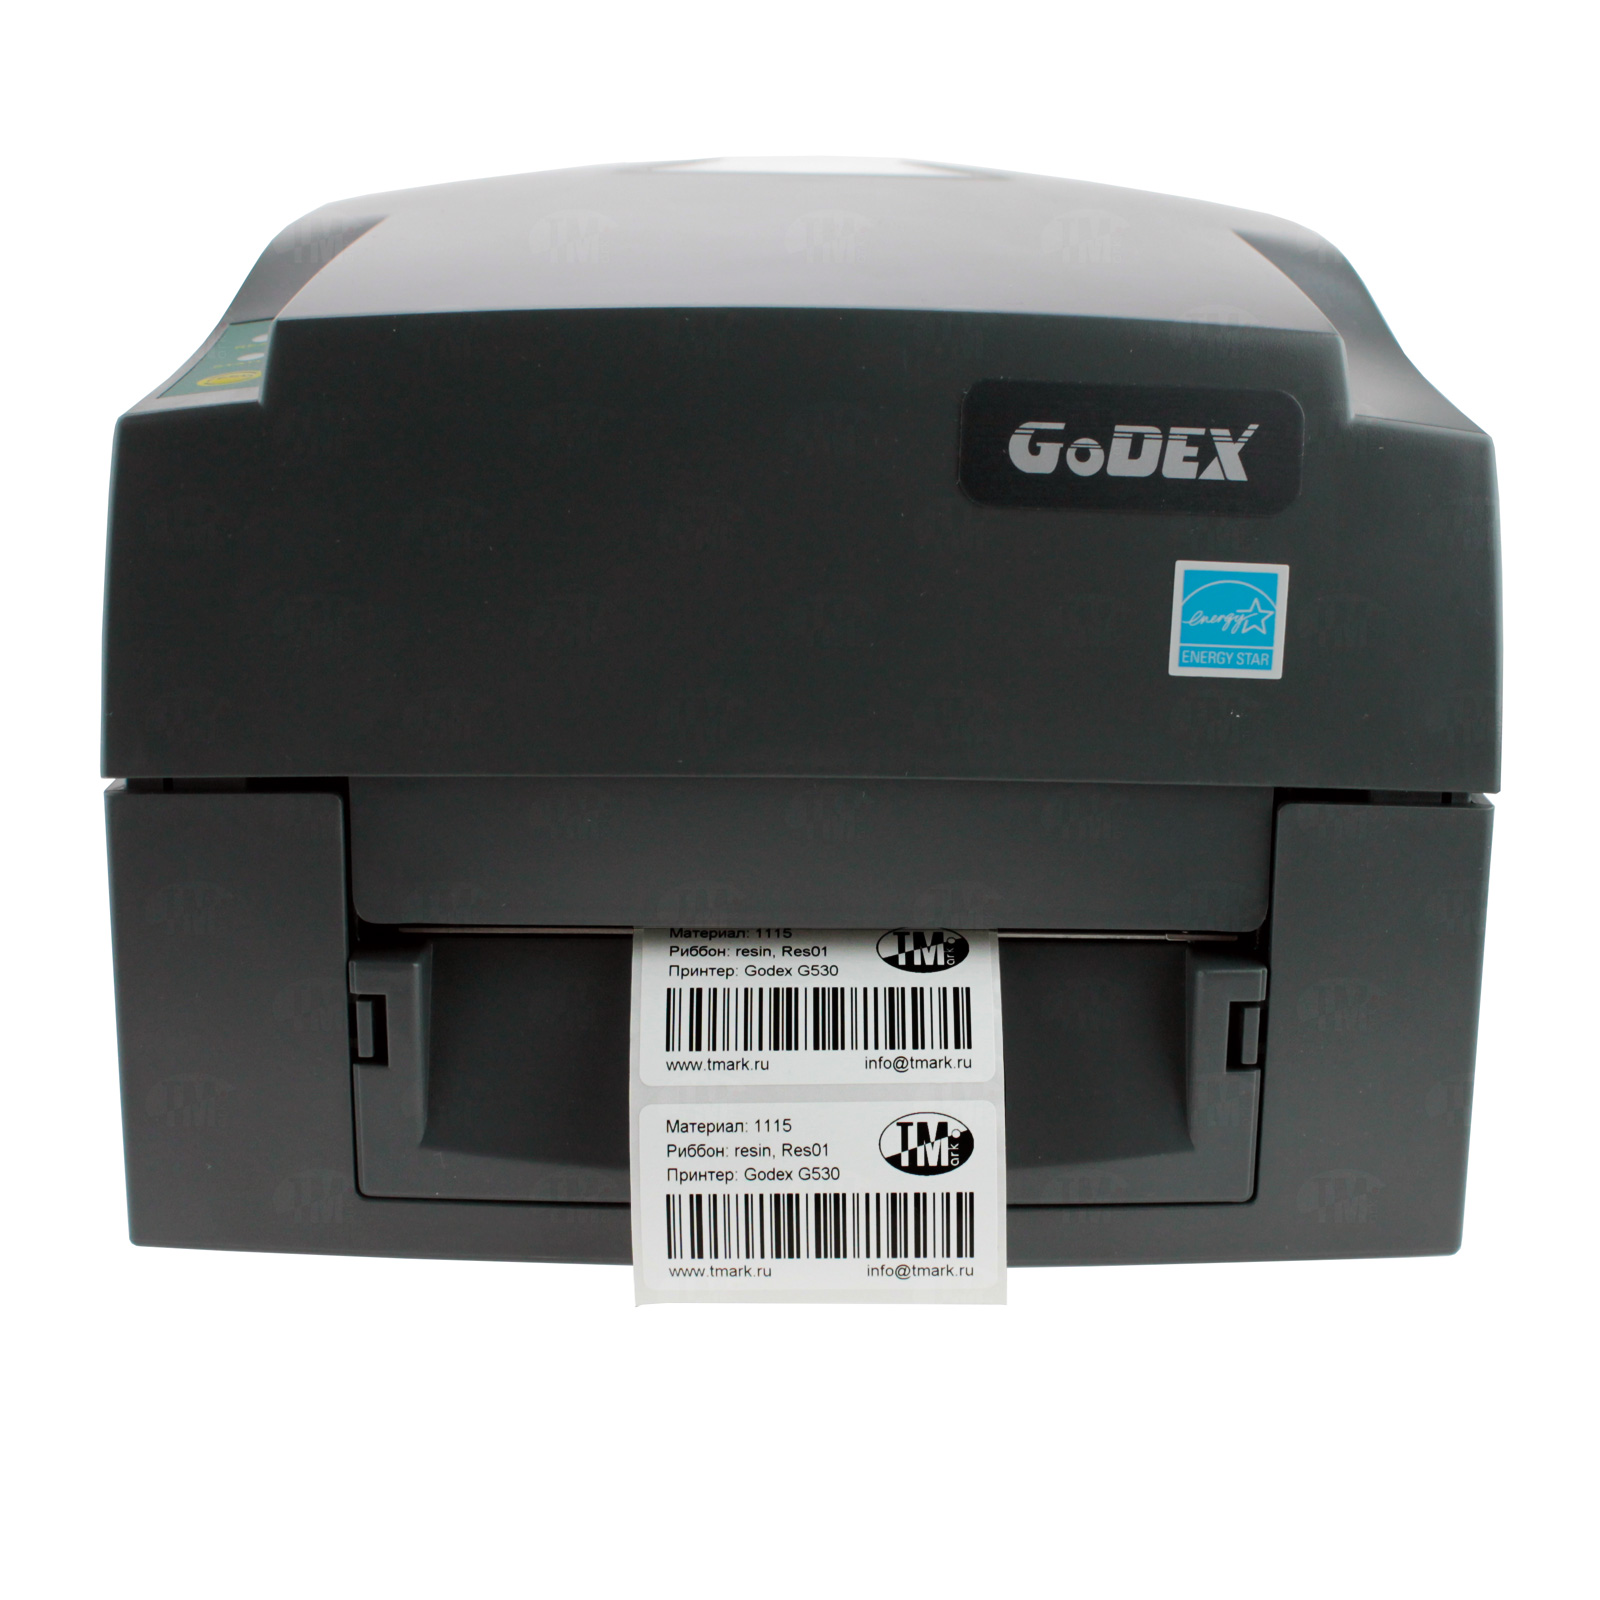 Godex g530 этикетки